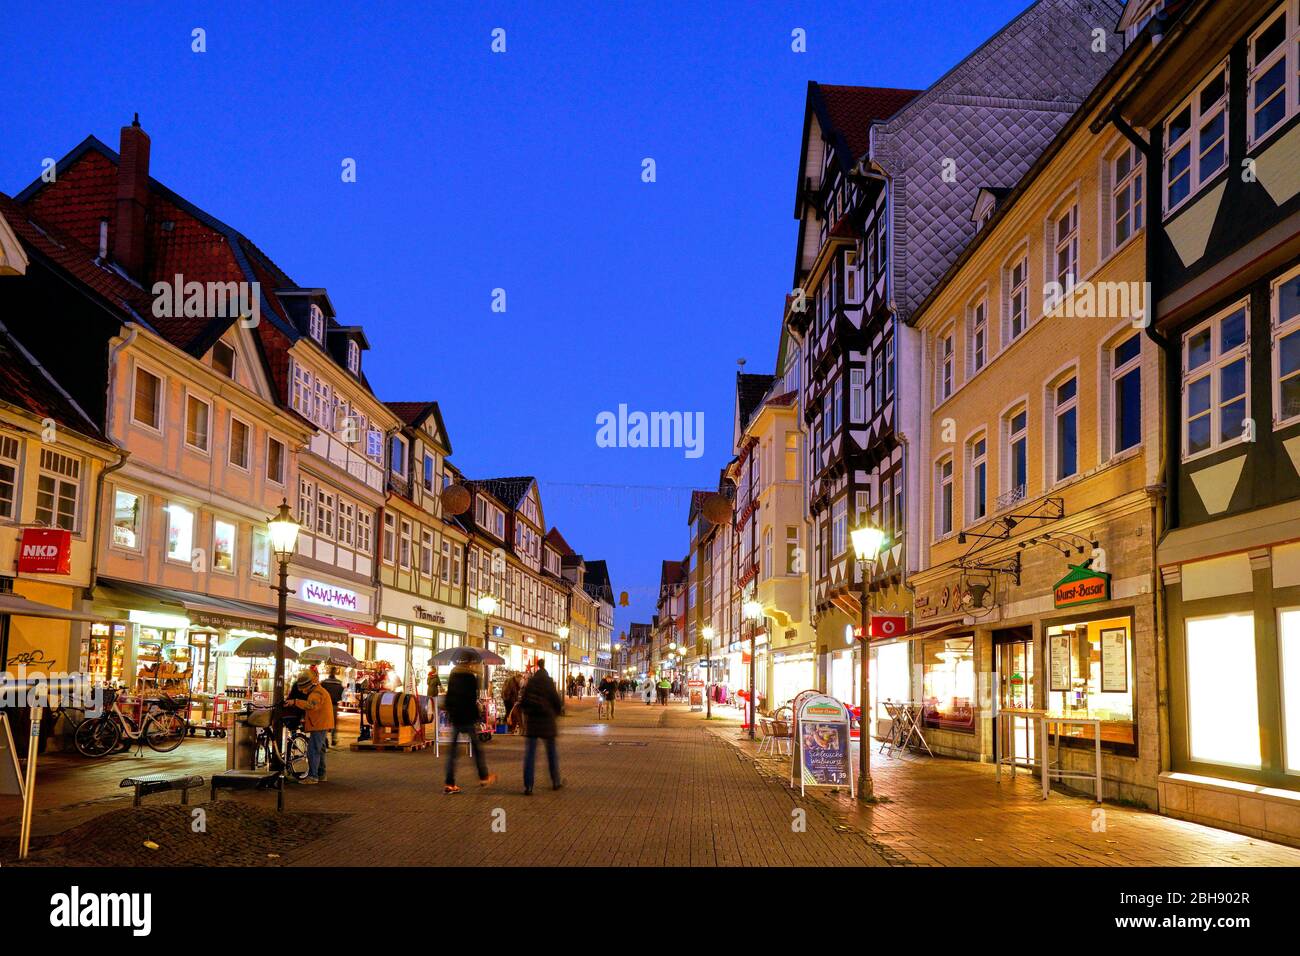 Deutschland, Niedersachsen, Wolfenbüttel, Altstadt, Lange Herzogstraße, Fußgängerzone, Fachwerkhäuser, abends, beleuchtet Stock Photo